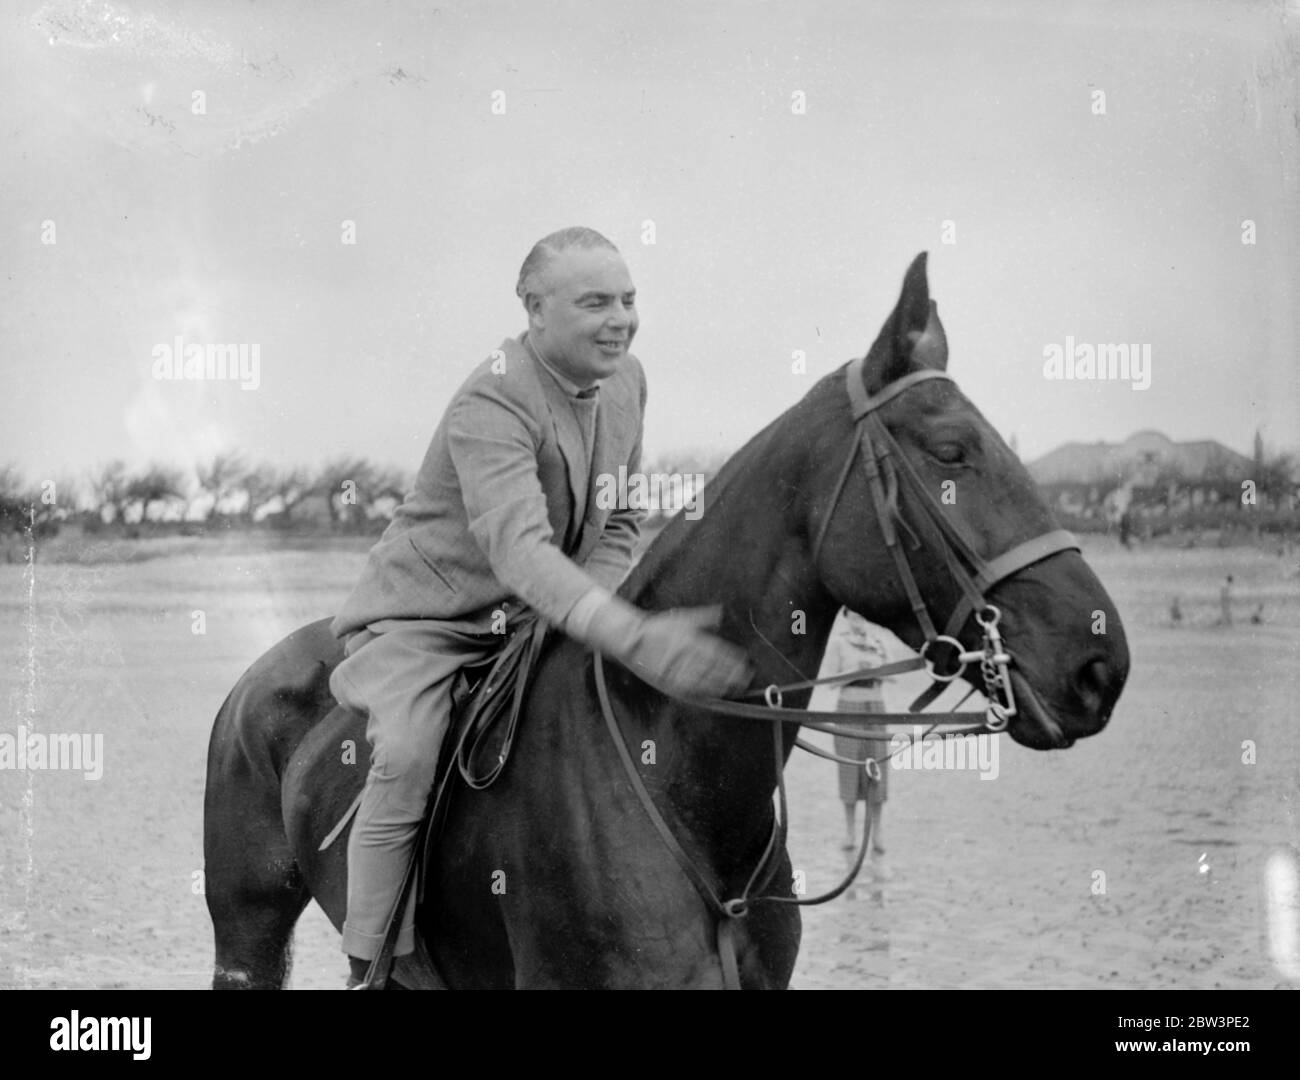 M. Hore Belisha passe ses vacances - à cheval . Loin des problèmes de transport . M. Hore Belisha fait pater son cheval après un galop rapide sur les sables à Ferring-by-Sea . 15 avril 1936 Banque D'Images